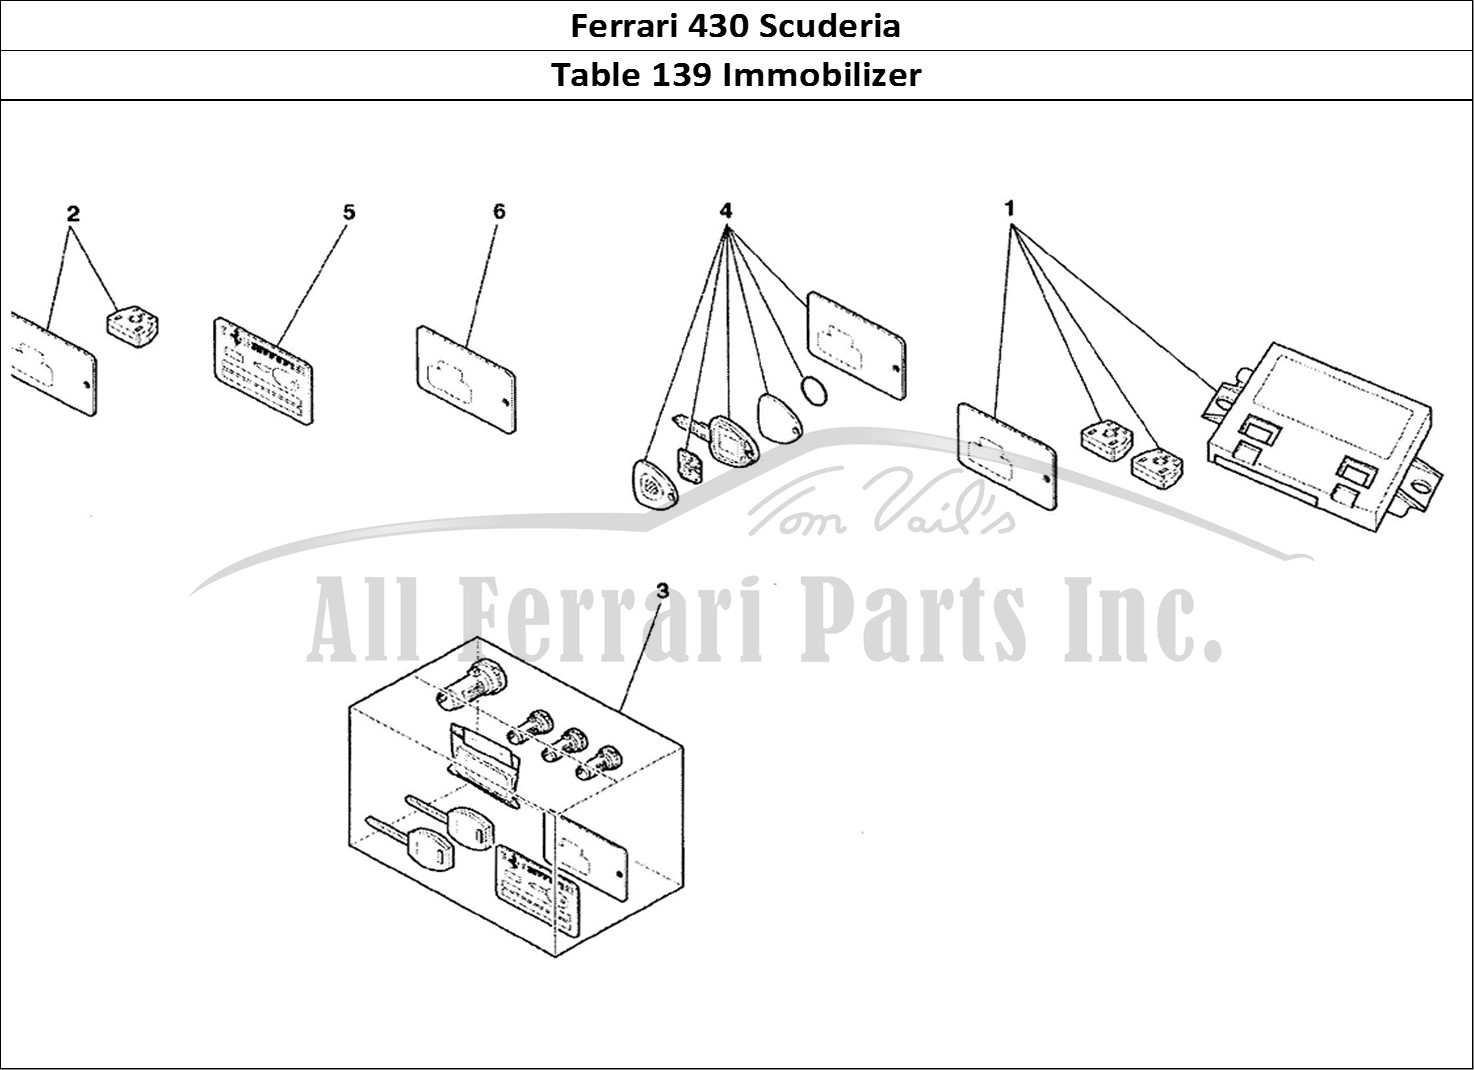 Ferrari Parts Ferrari 430 Scuderia Page 139 Immobilizer Kit